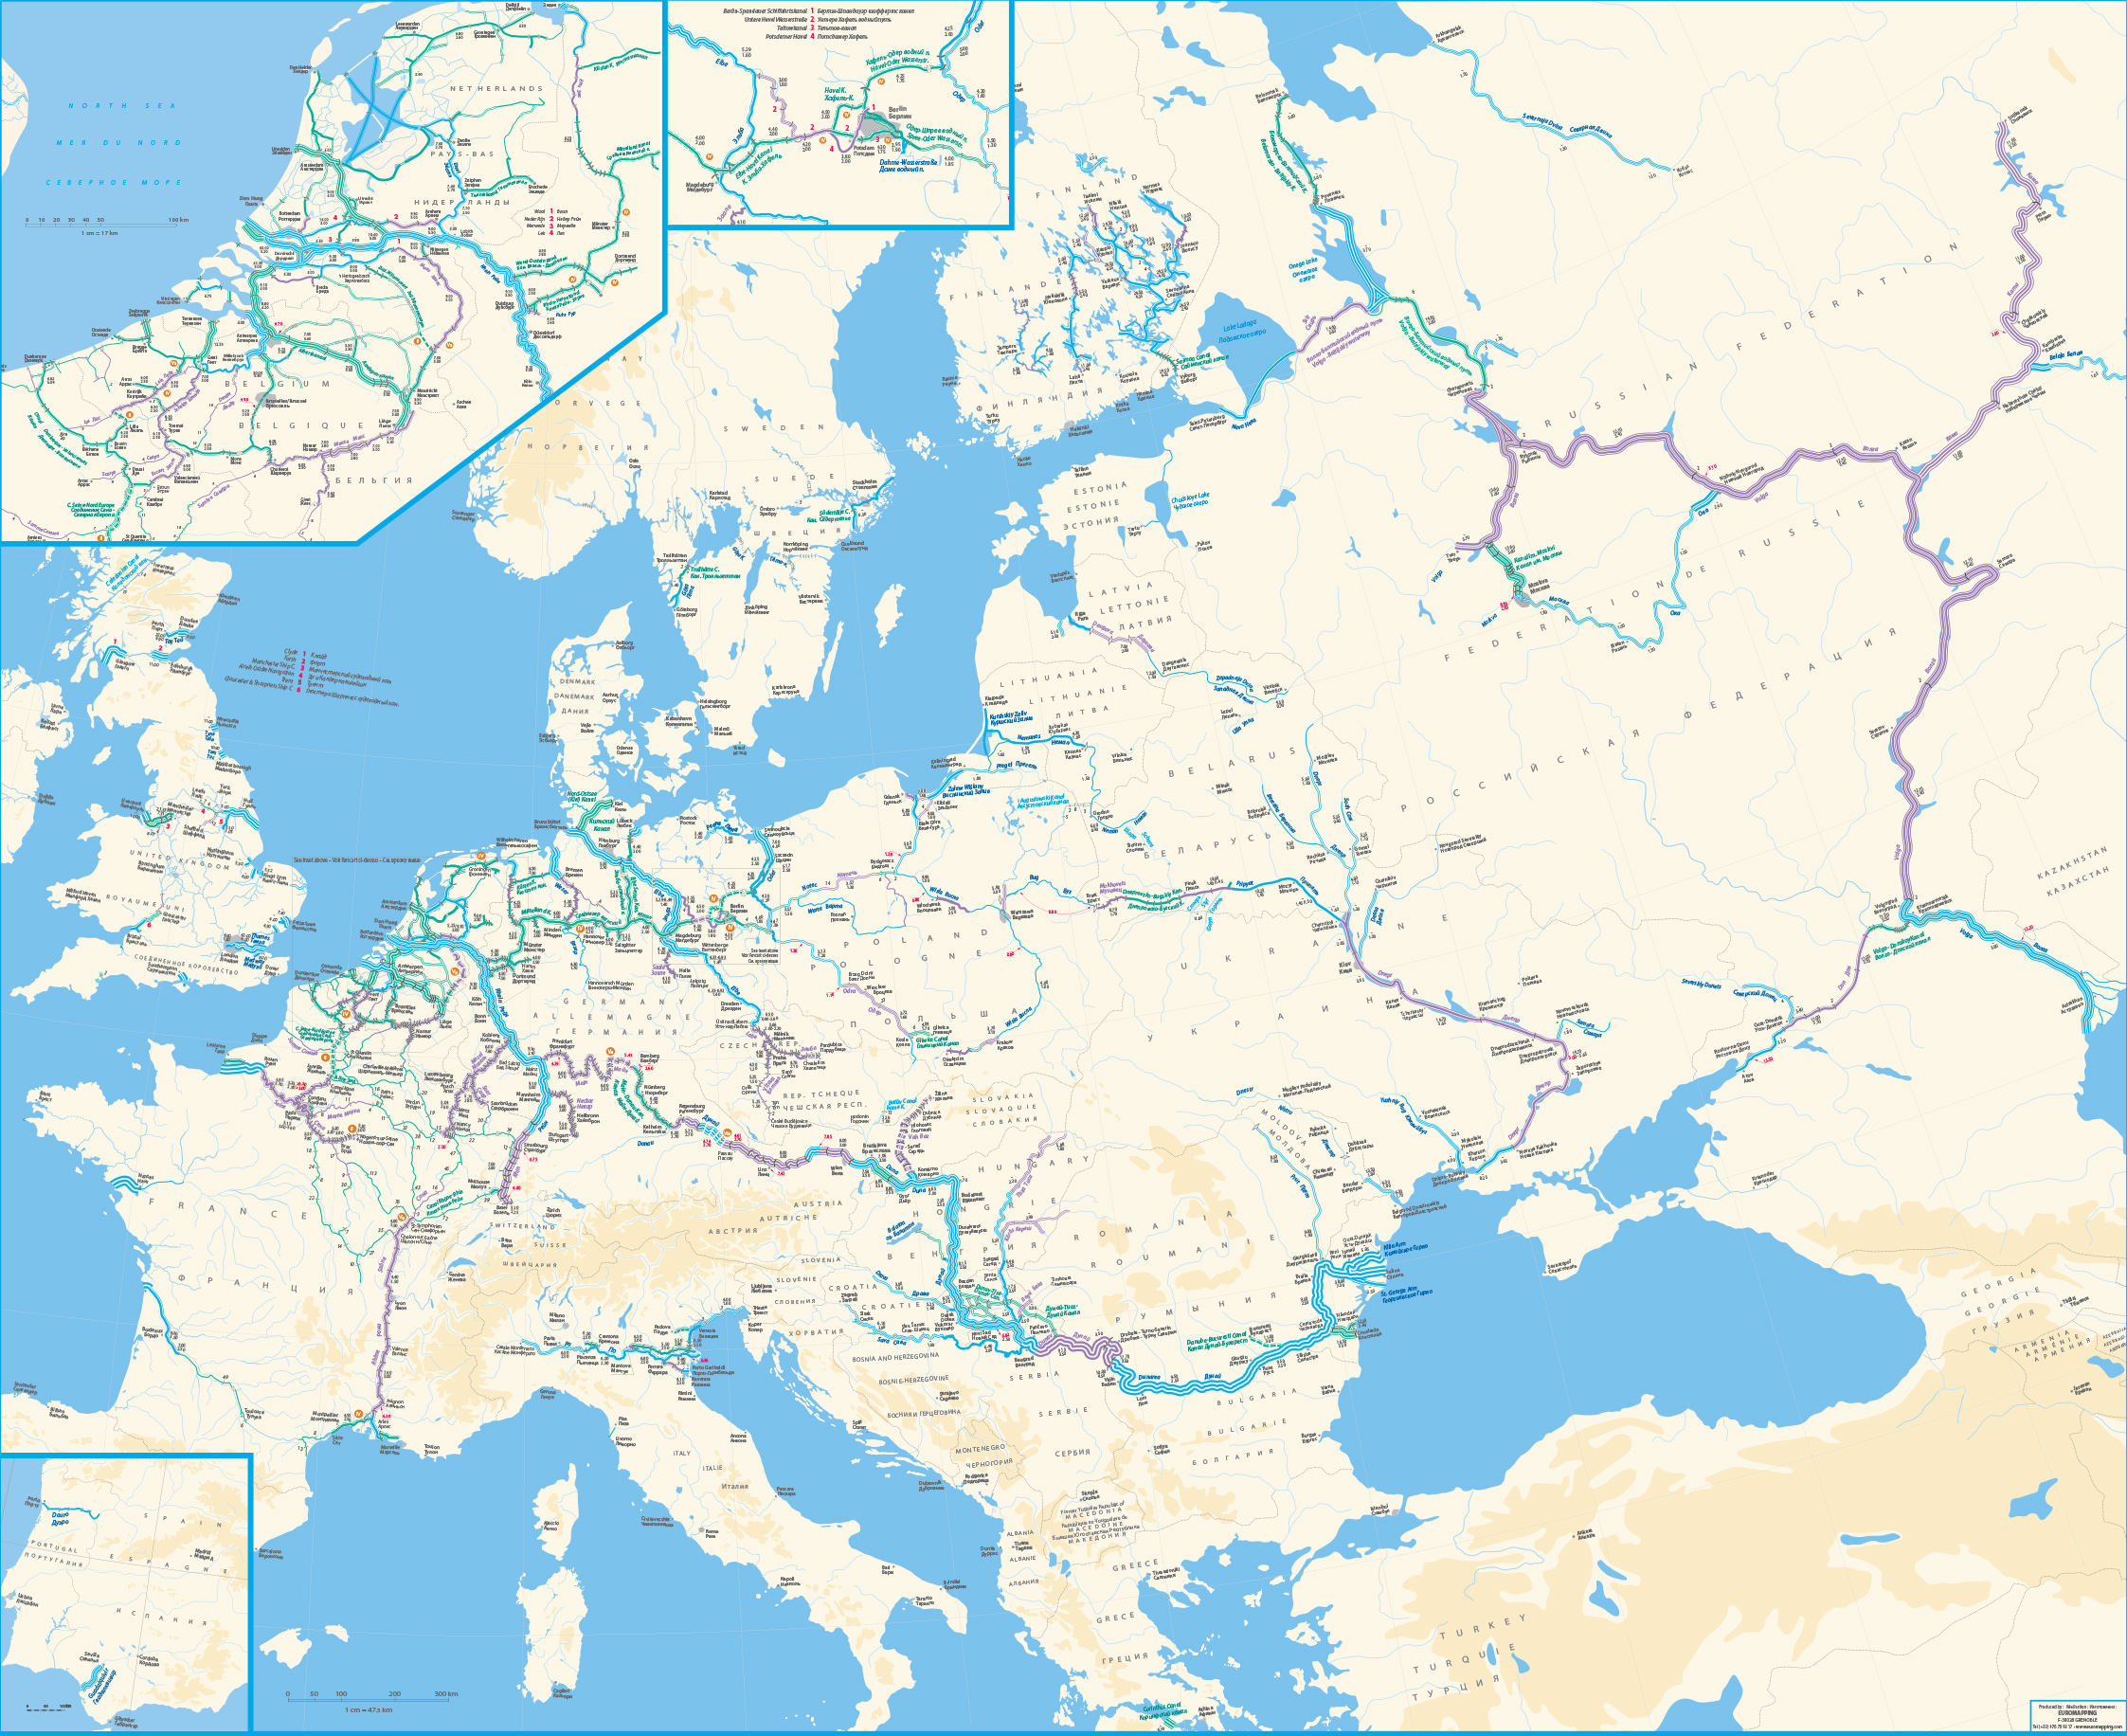 Река в центре европы. Карта судоходных рек Европы. Каналы Европы судоходные на карте. Карта водных путей Европы. Речные пути Европы.